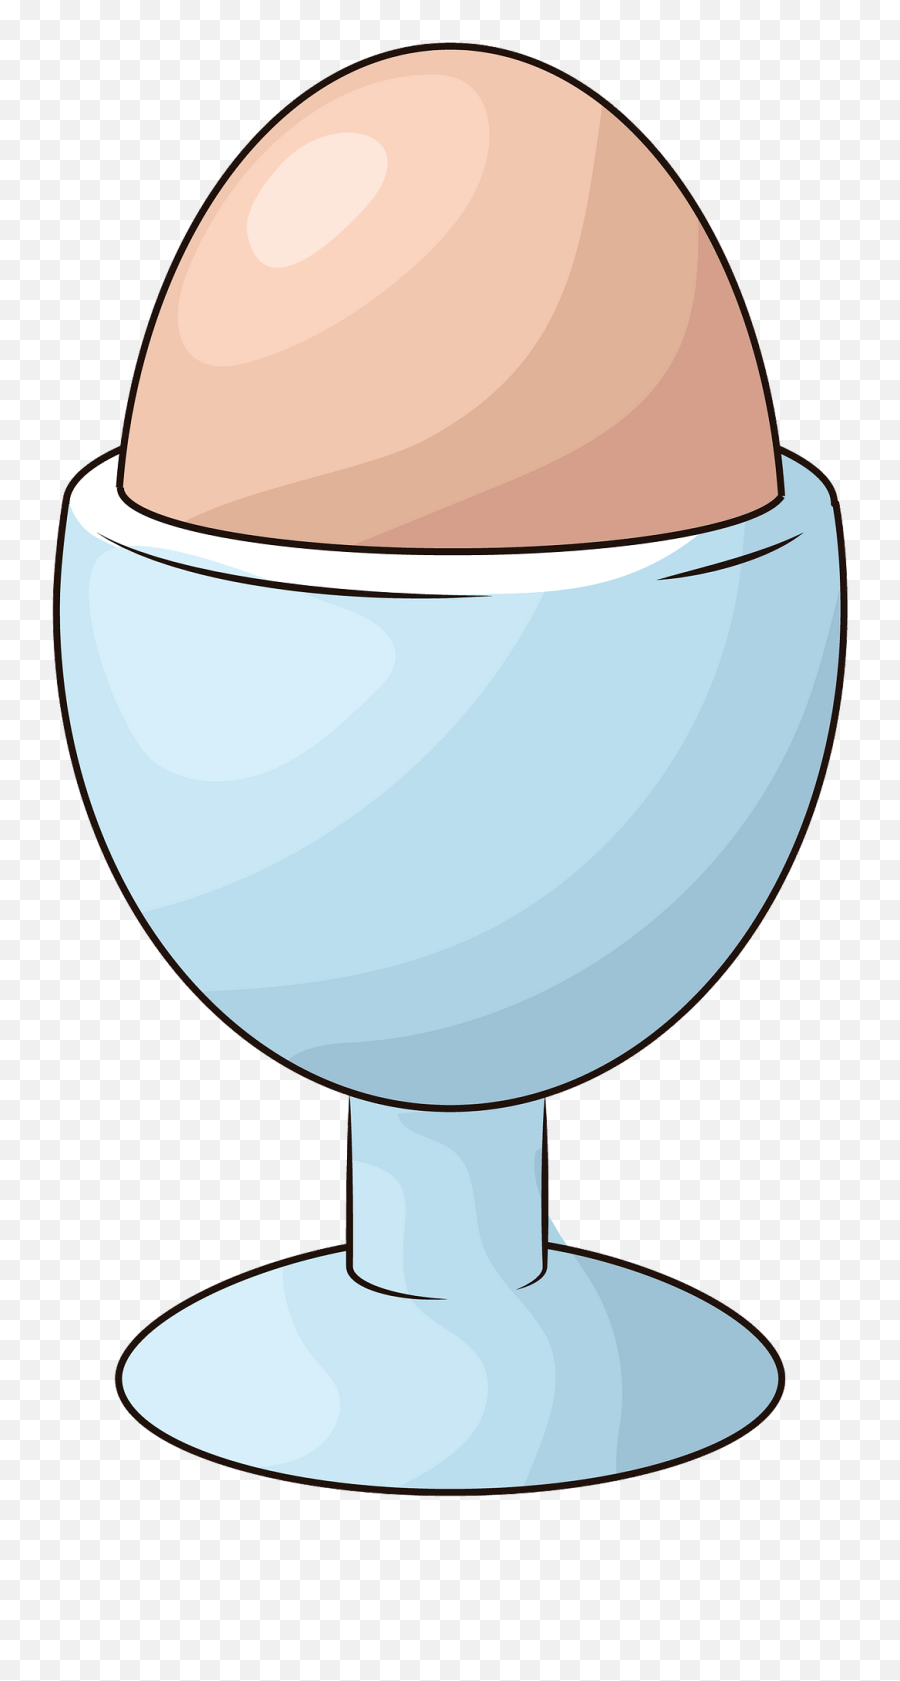 Egg - Egg Cup Emoji,Cracked Egg Emoji